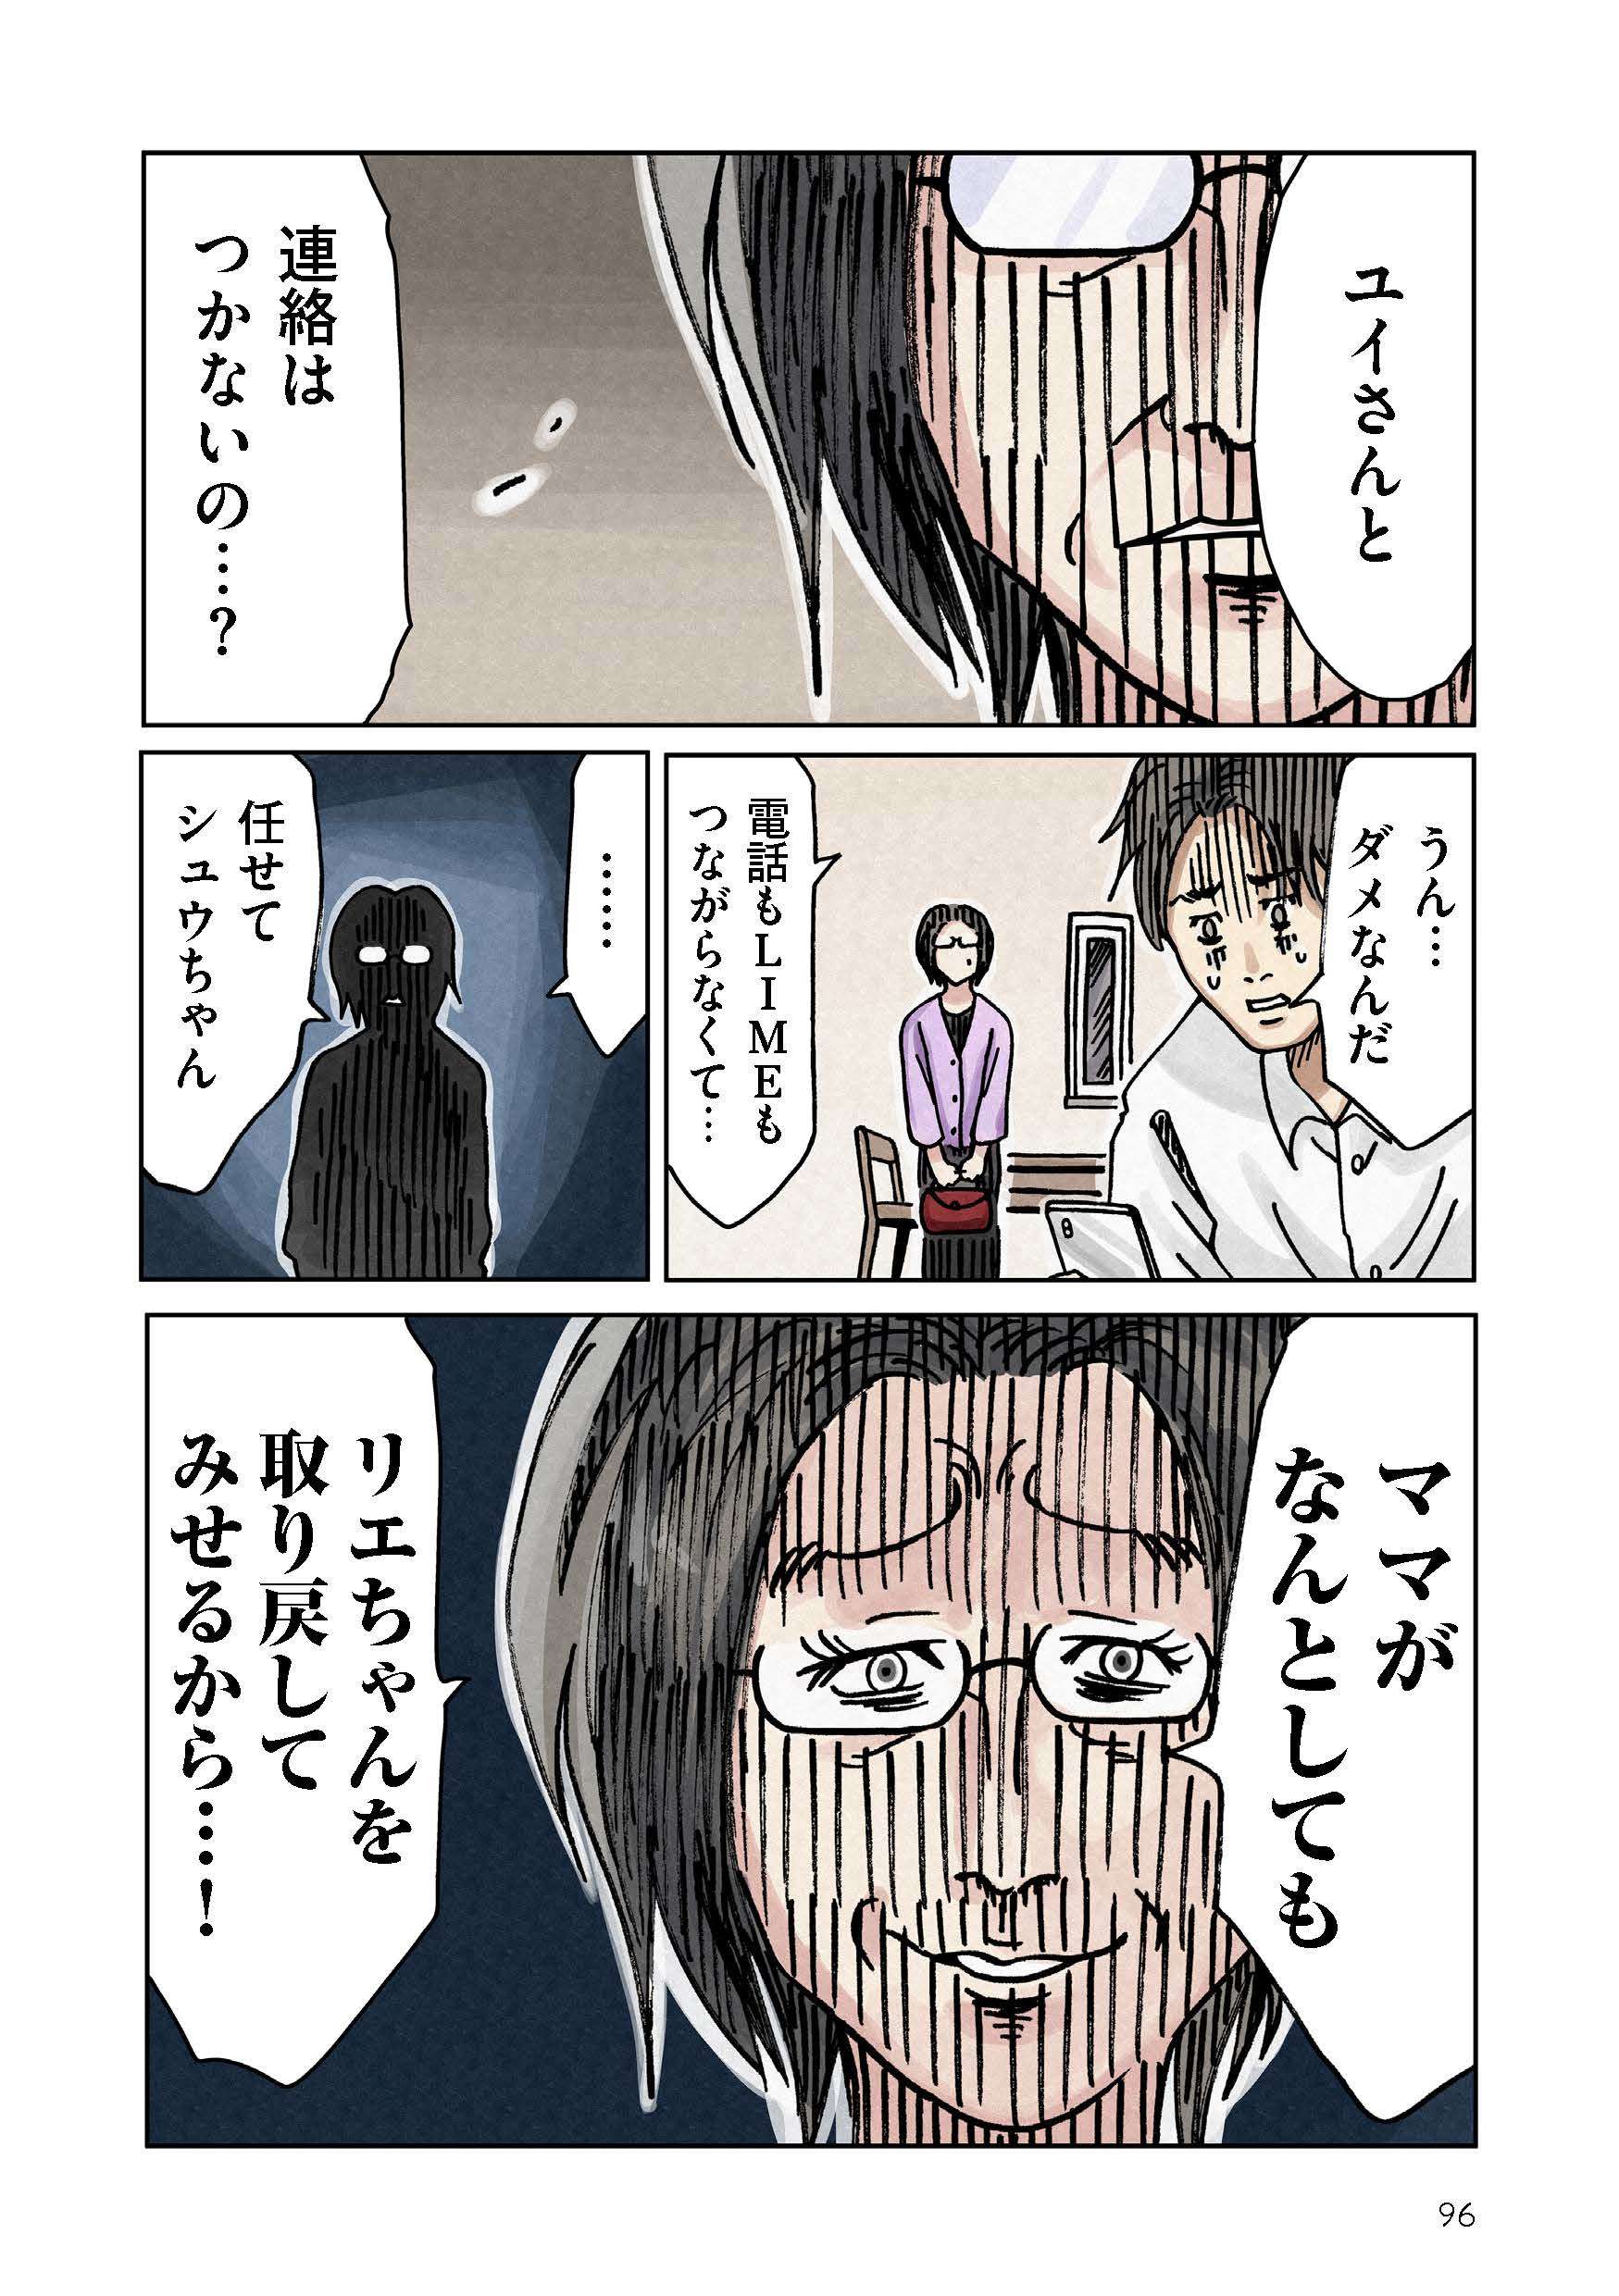 どちらかの家庭が崩壊する漫画_rgb_単ページ_ページ_096.jpg